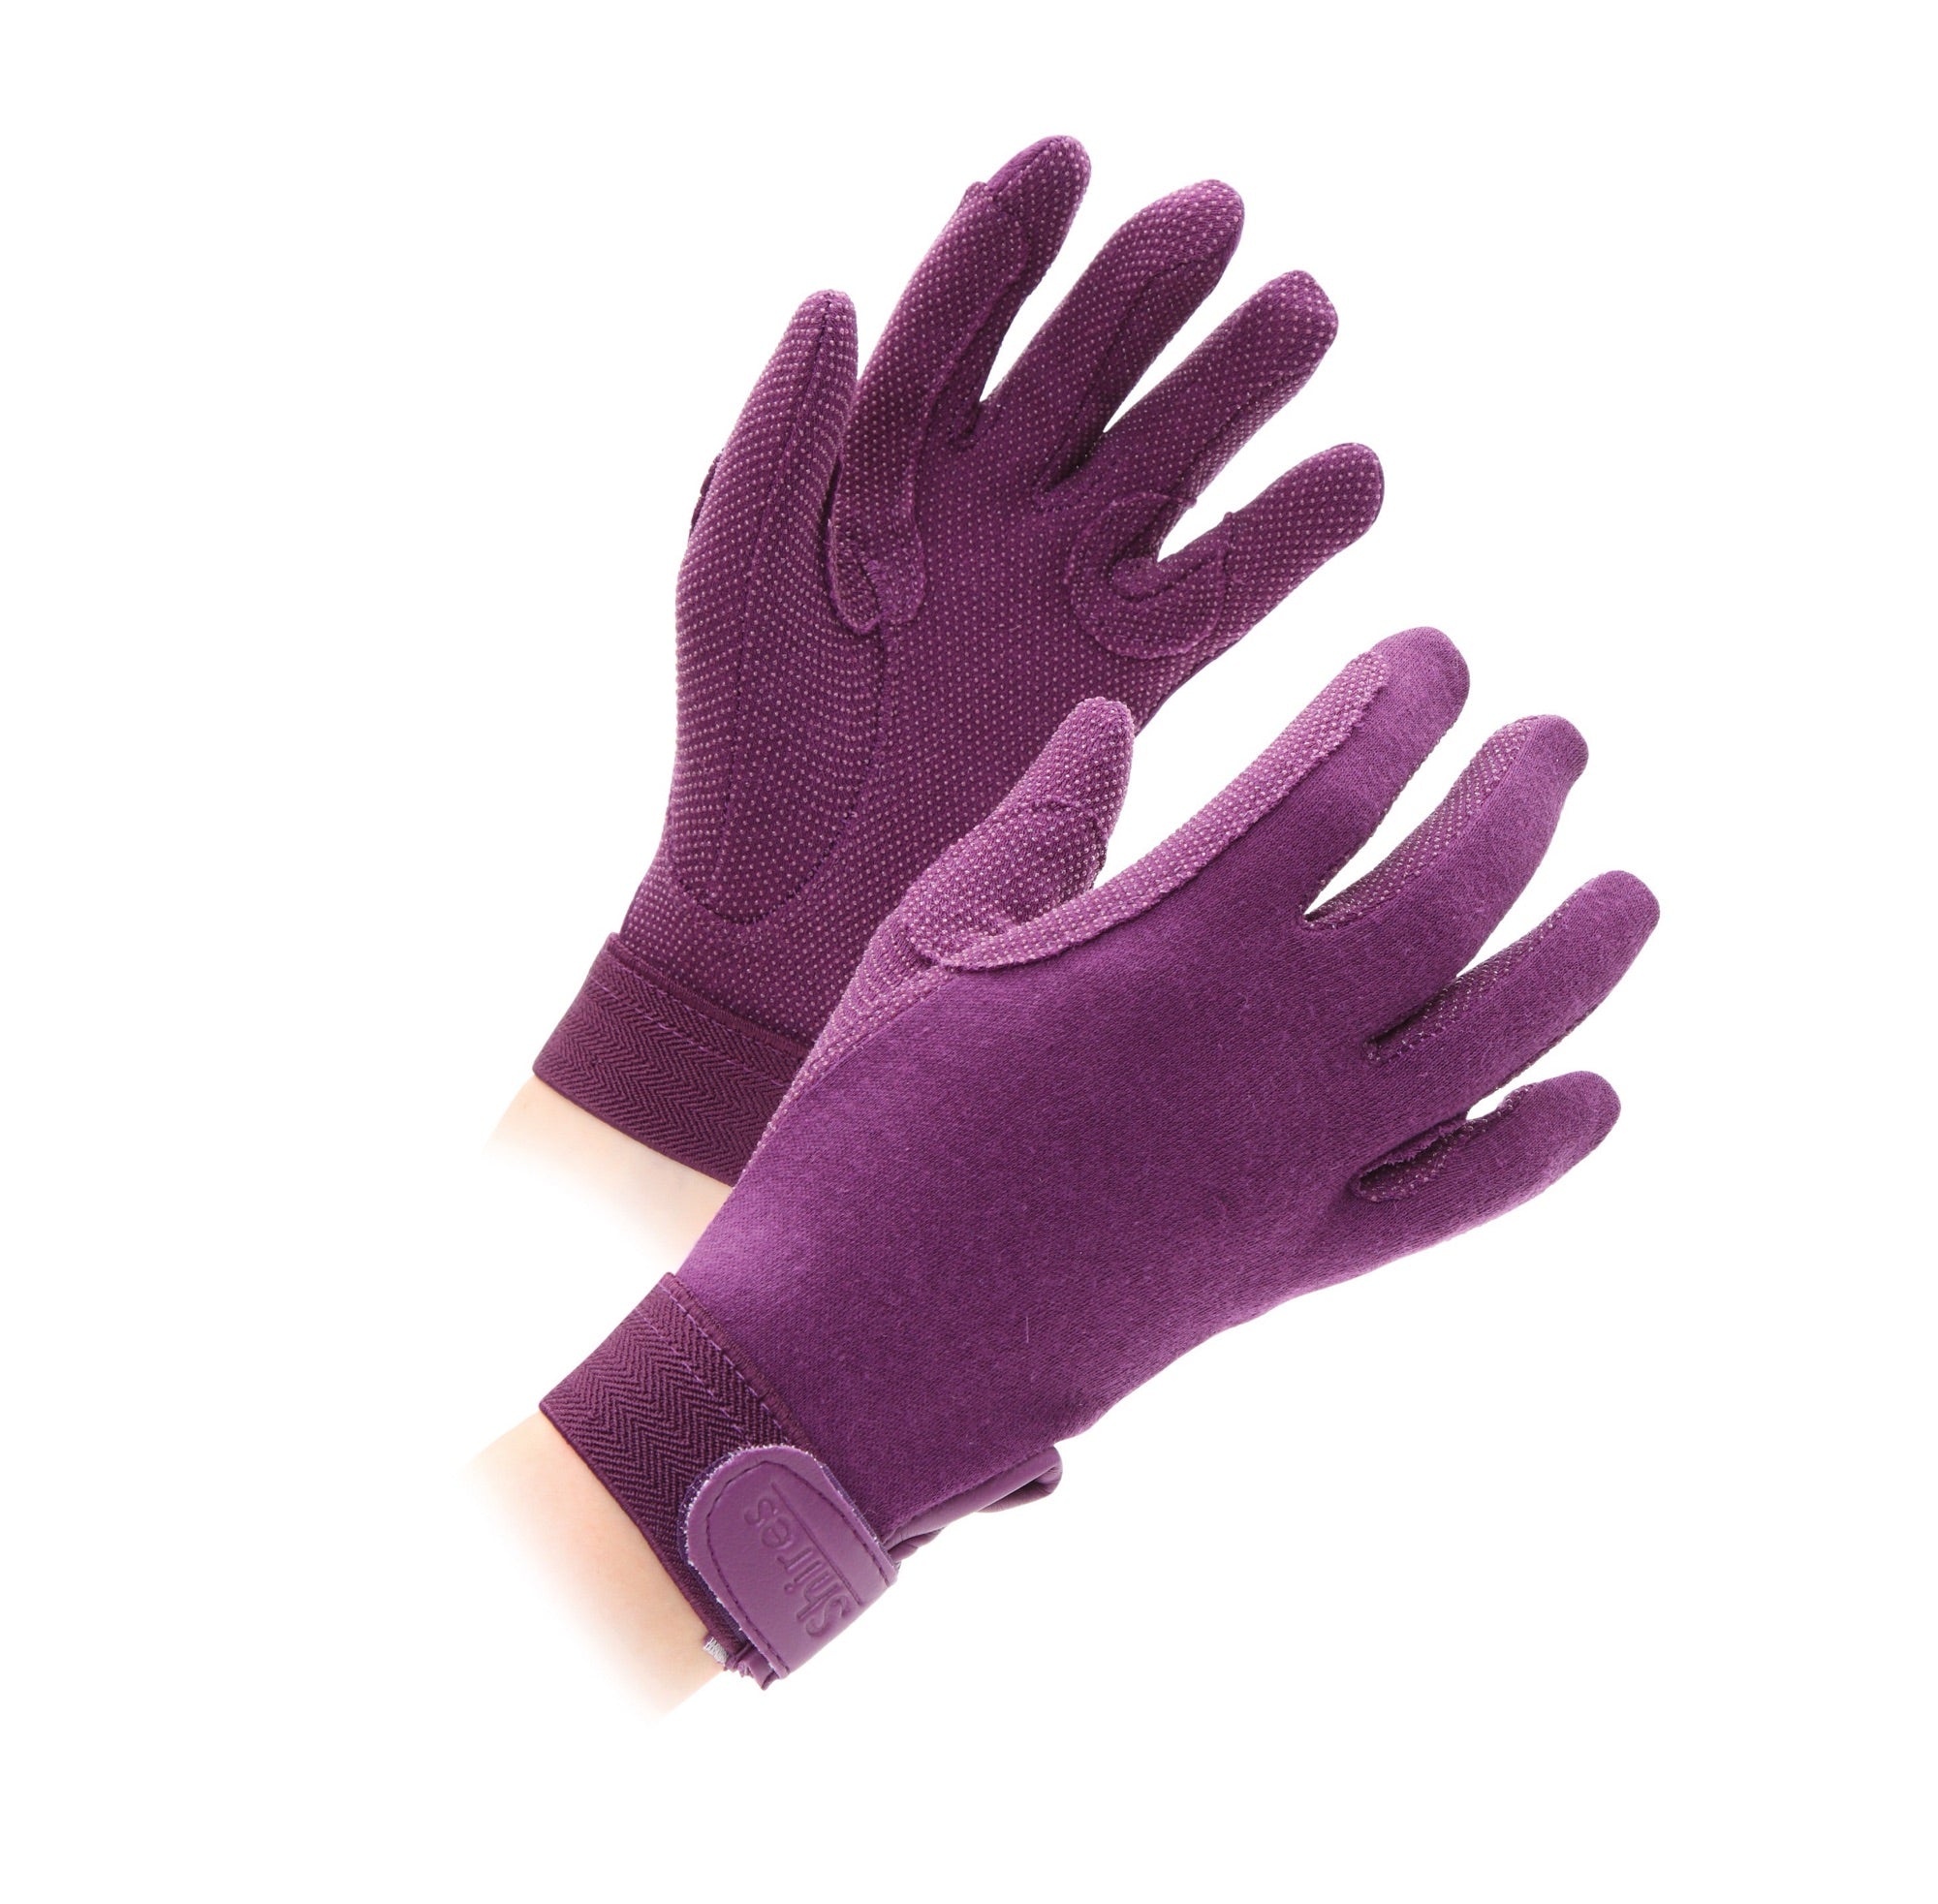 Shires Childrens Newbury Cotton Gloves